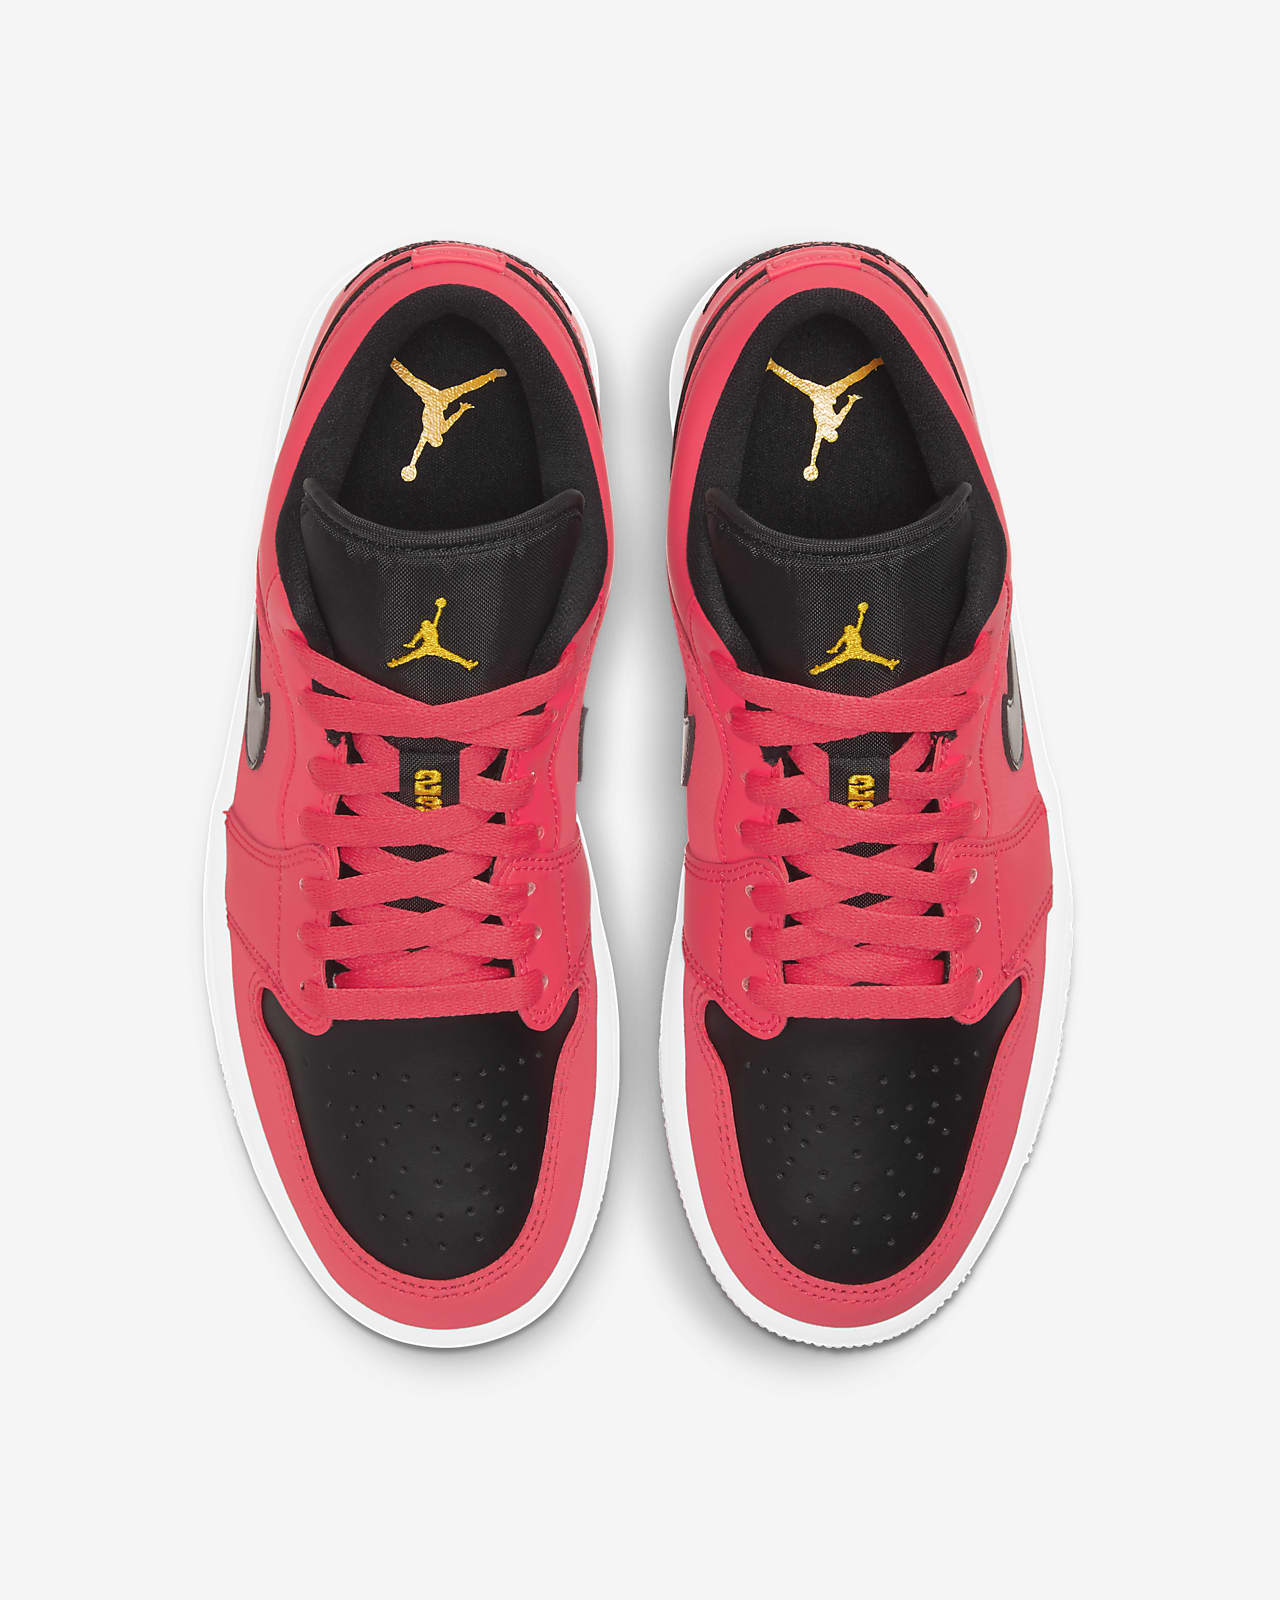 Air Jordan 1 Low Women's Shoe. Nike NZ